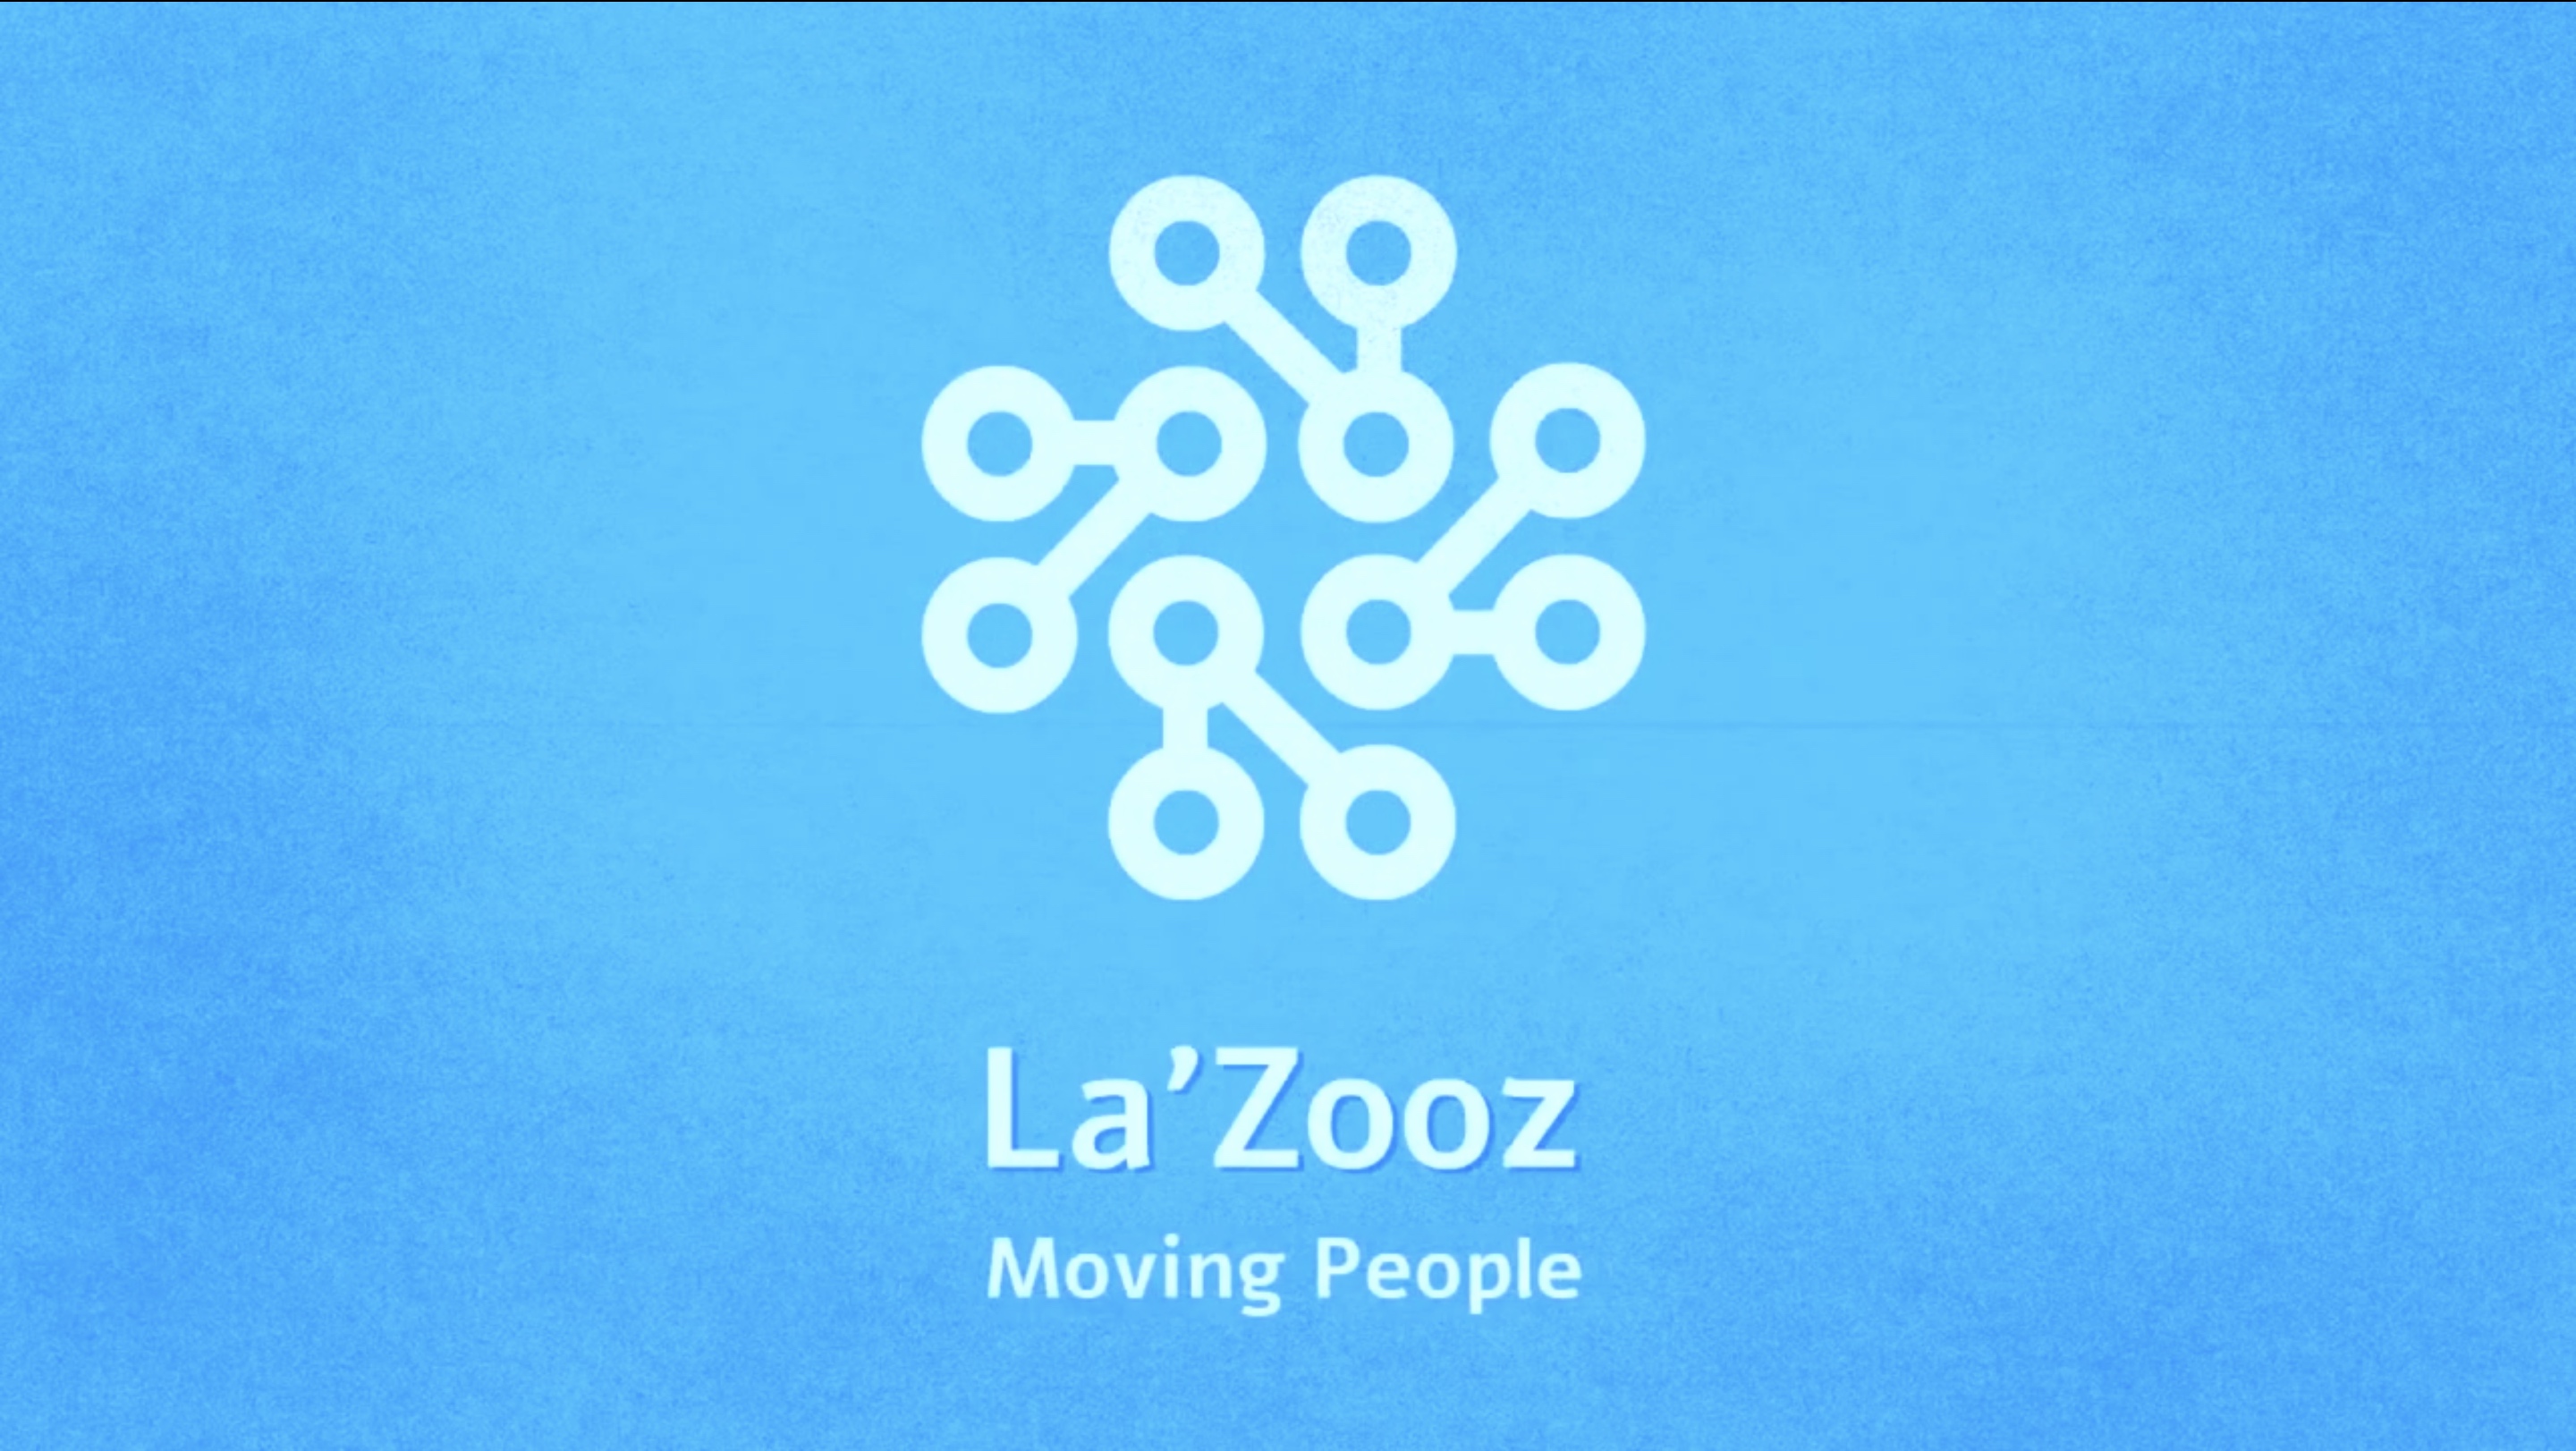 Screenshot from La'Zooz pitch video